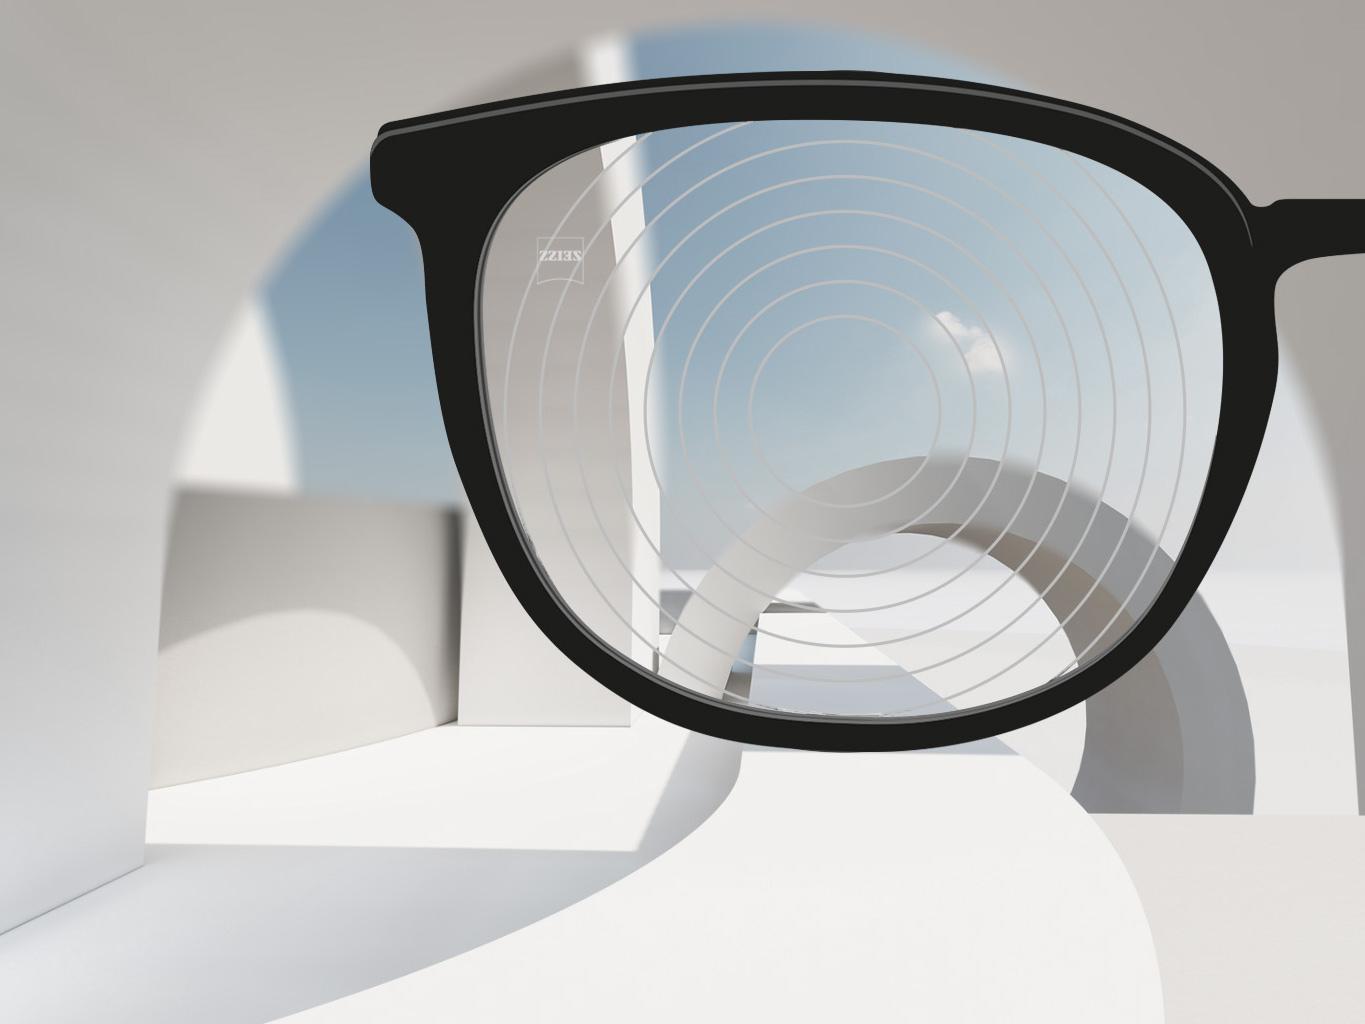 Et nærbilde av brilleglass for nærsynthet fra ZEISS, med svarte brilleinnfatninger og konsentriske sirkler på brilleglassoverflaten. 